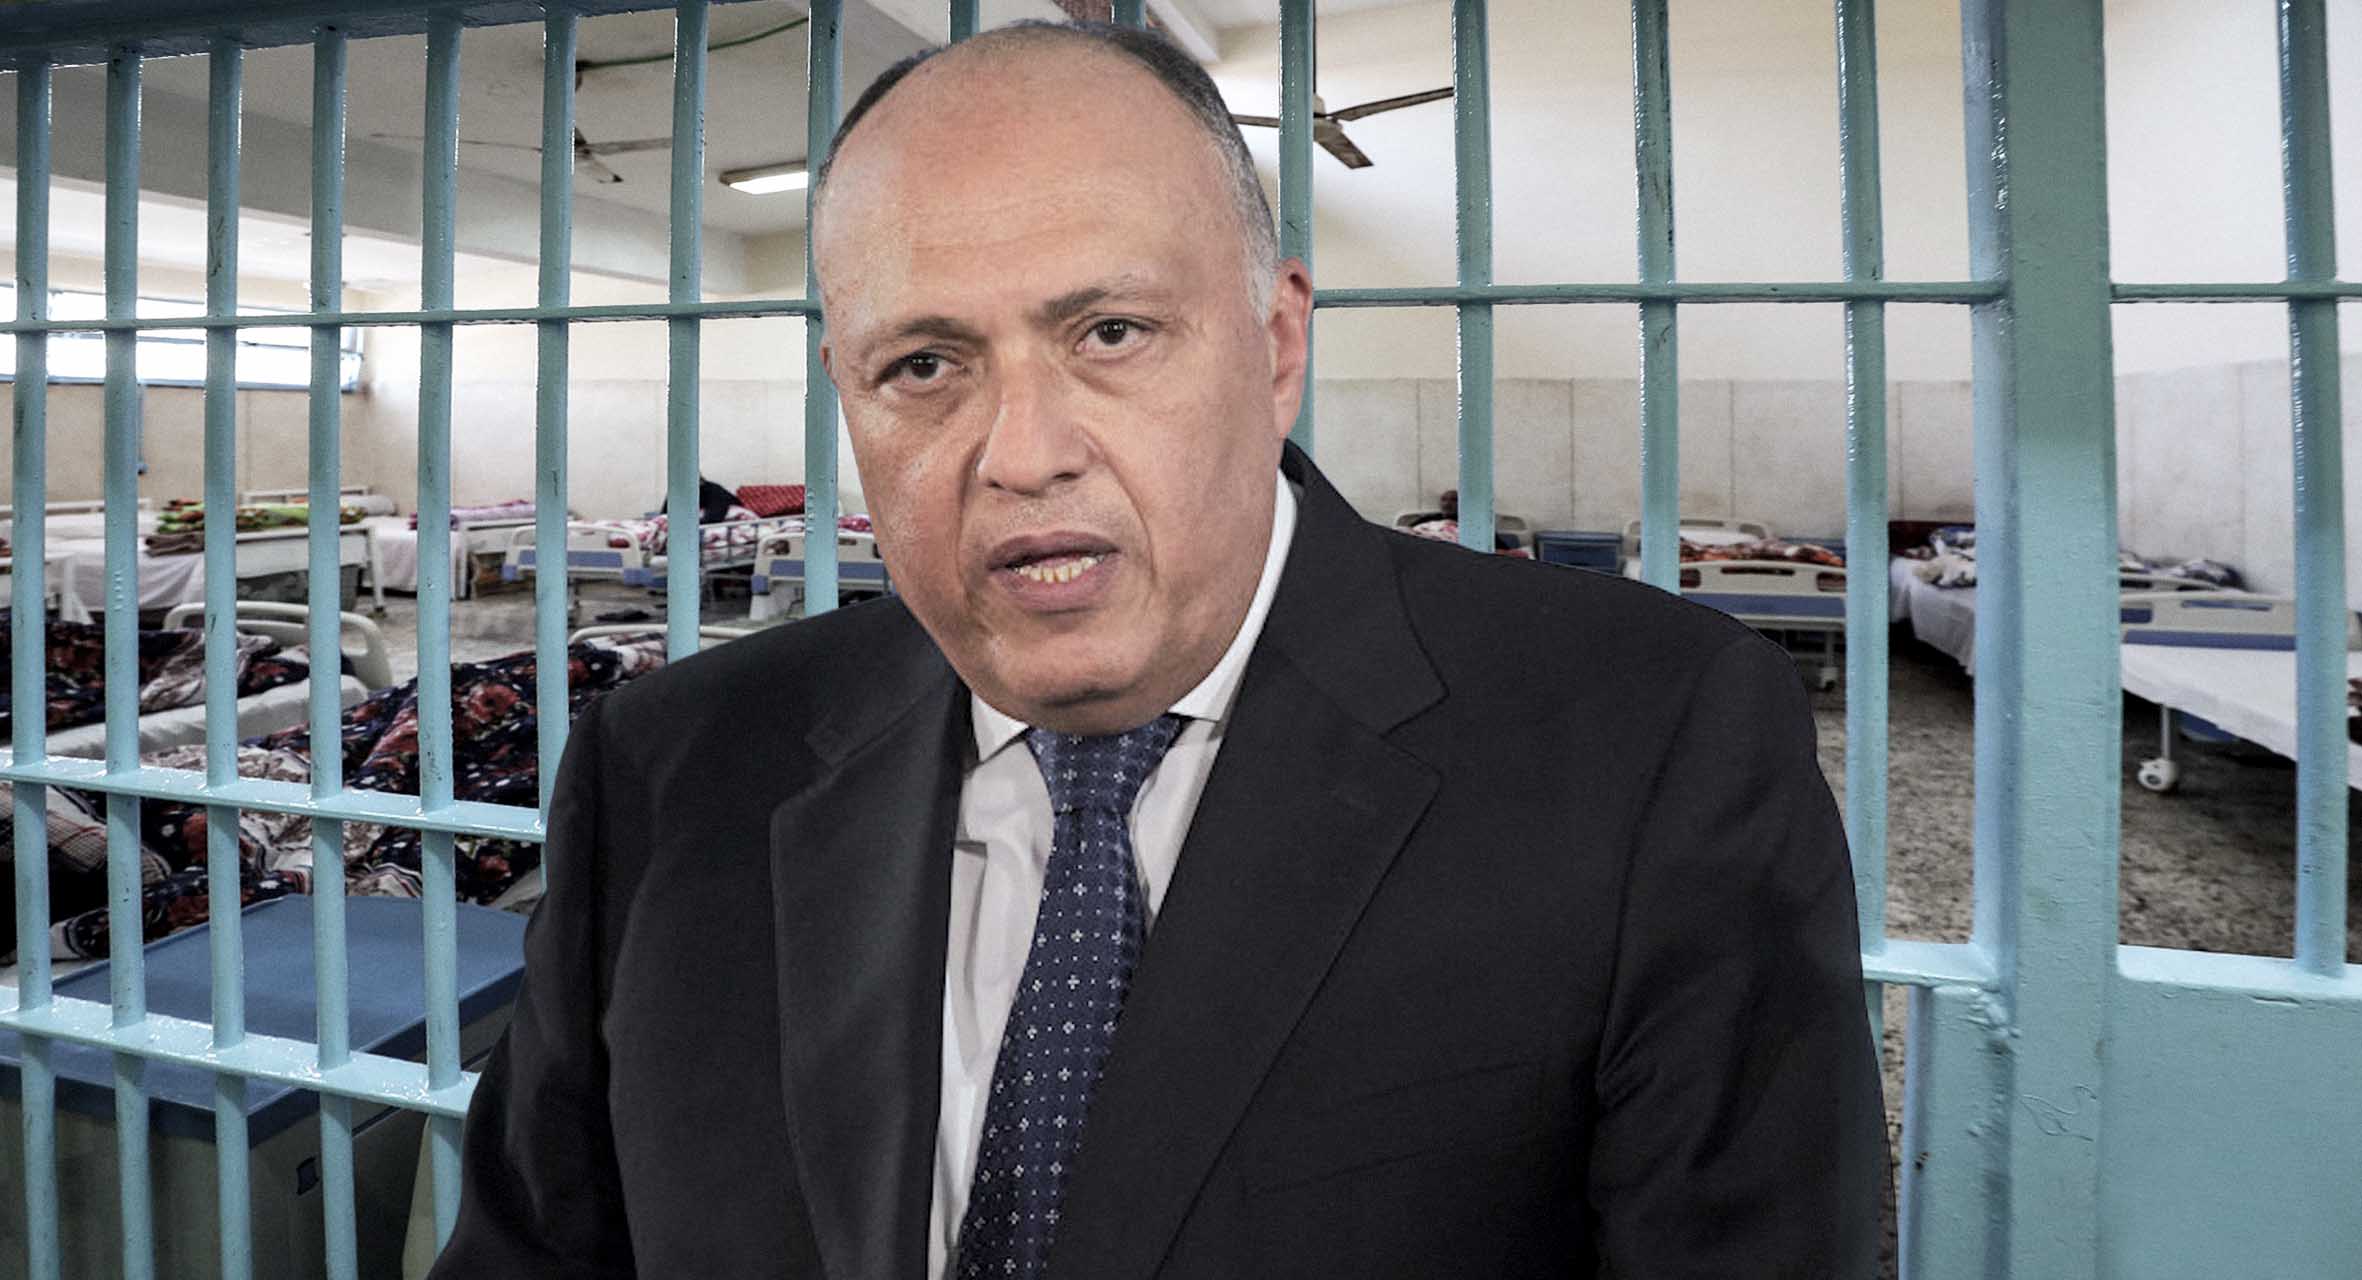 صورة مصلحة السجون المصرية تعرض على إيطاليا خبراتها في الحجر على المواطنين